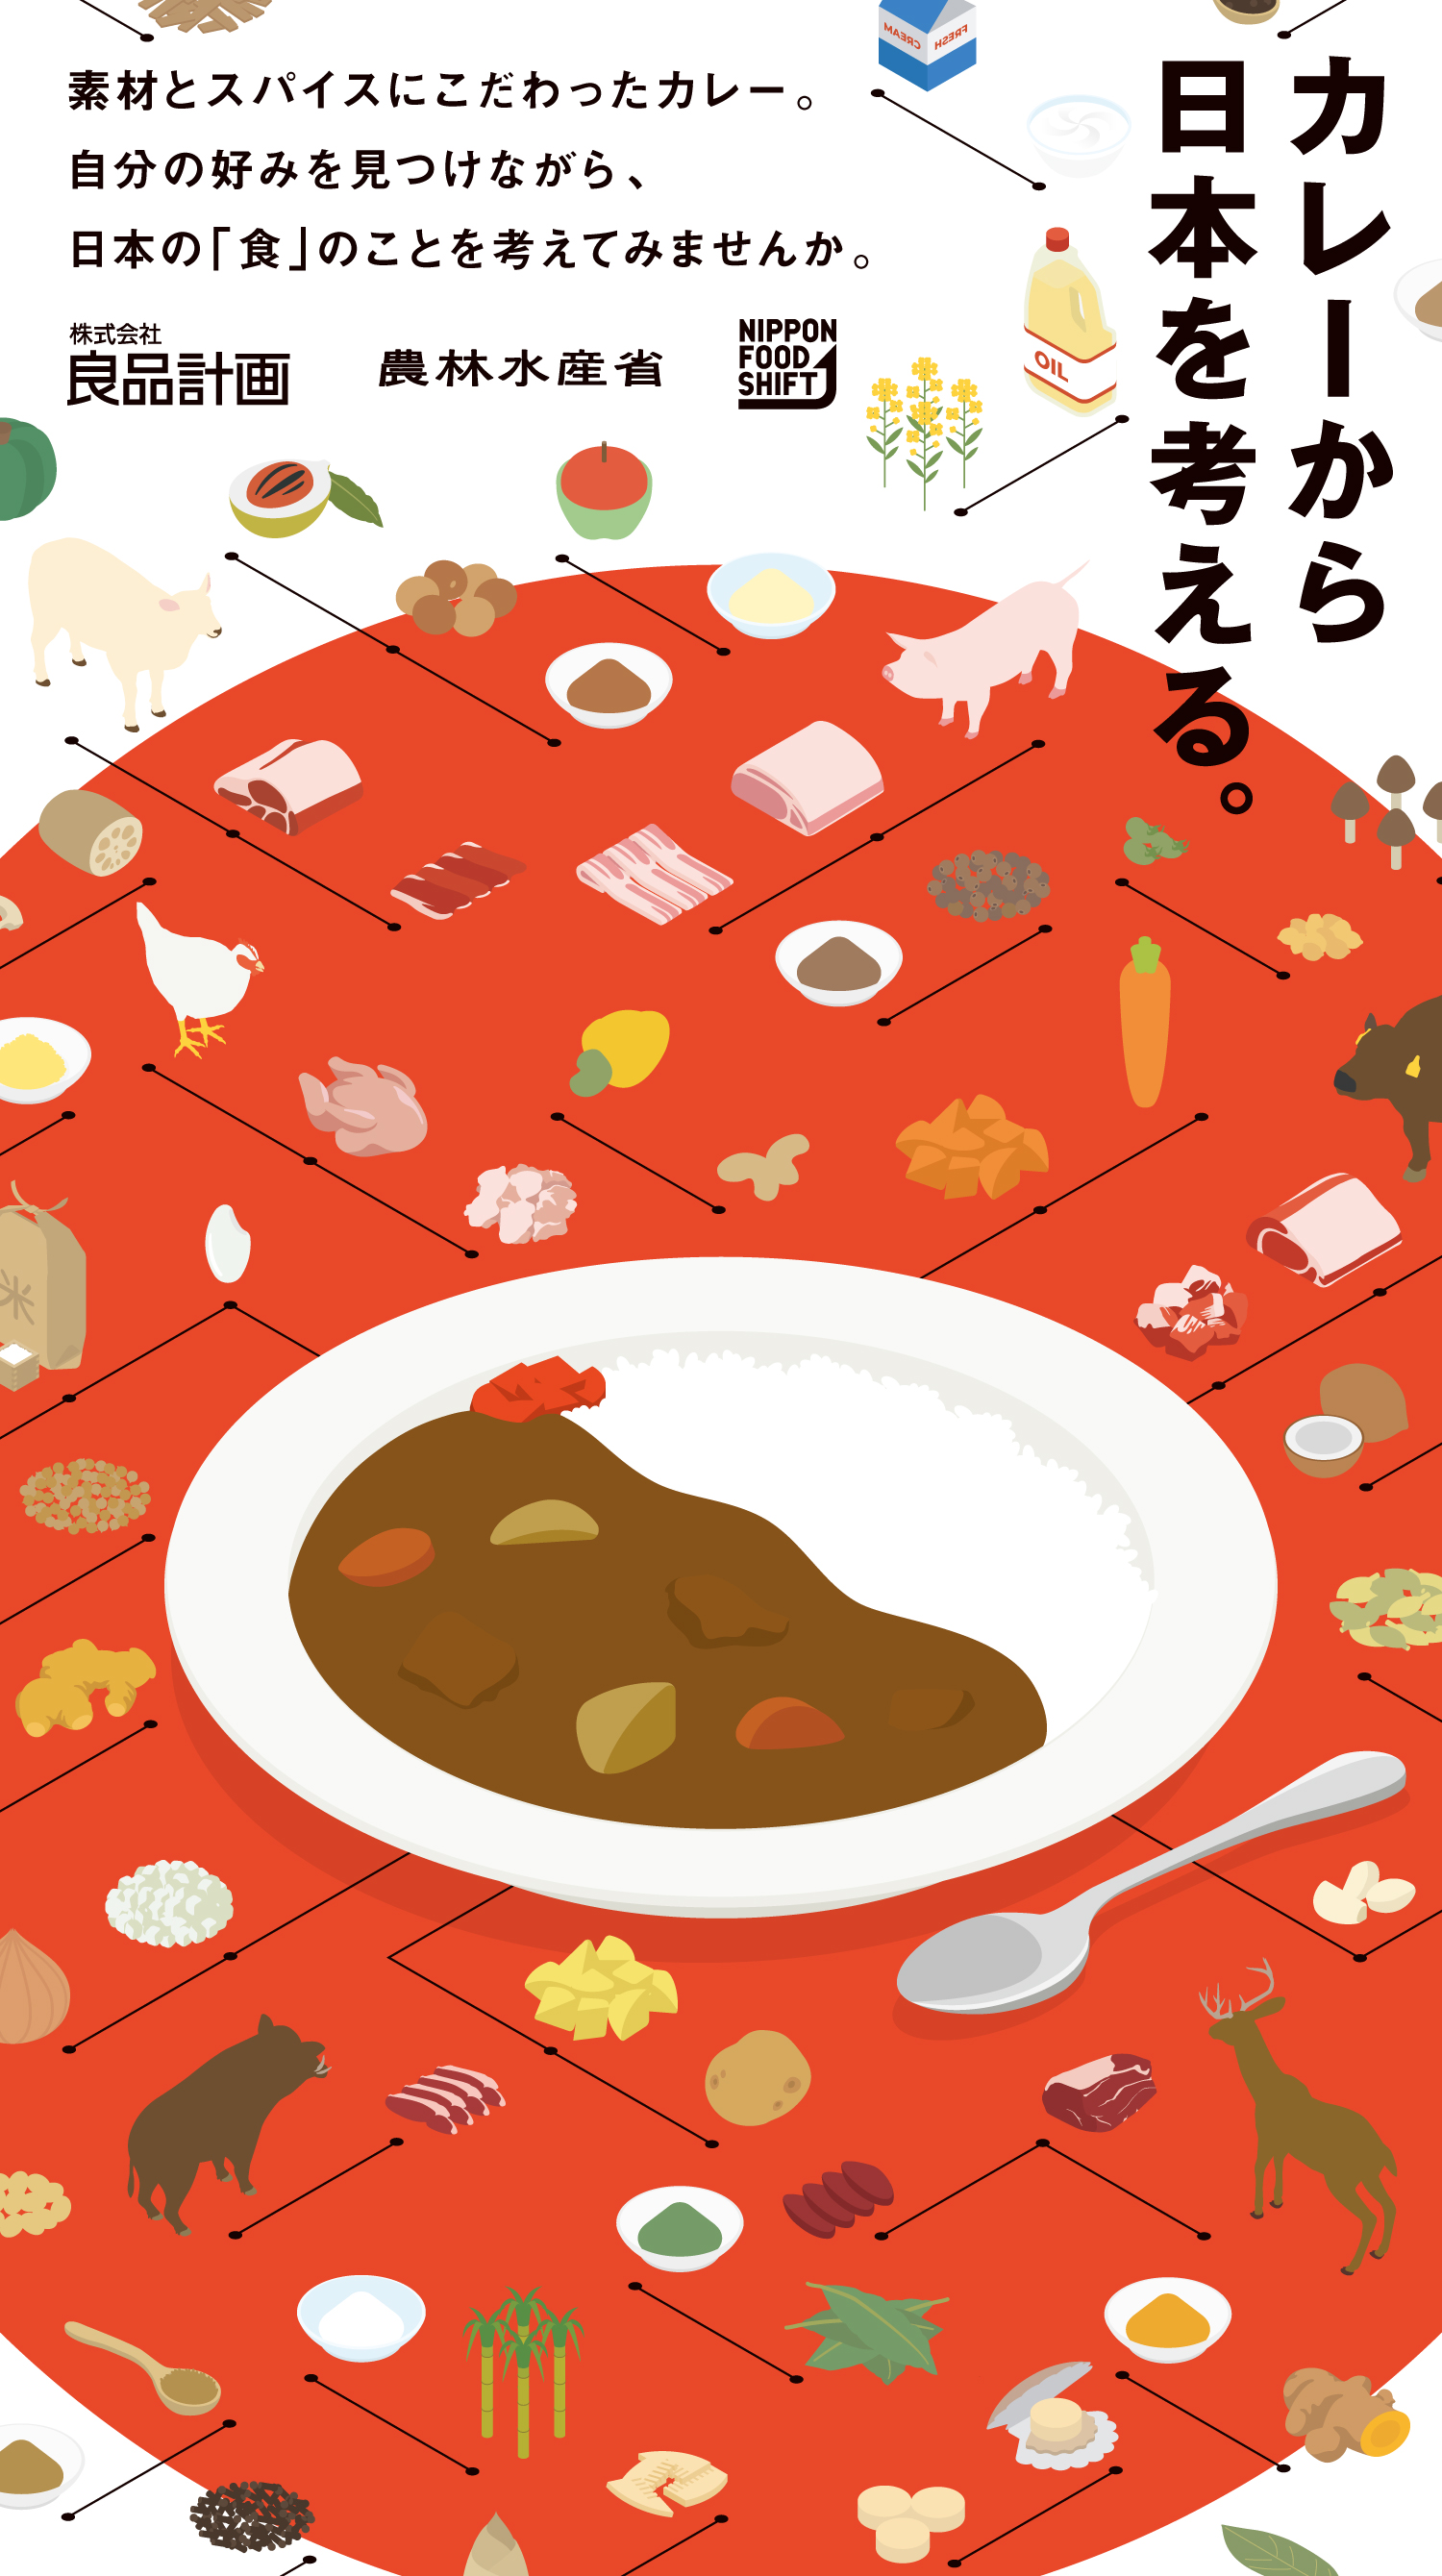 カレーから日本を考える。素材とスパイスにこだわったカレー。自分の好みを見つけながら、日本の「食」のことを考えてみませんか。株式会社良品計画　農林水産省